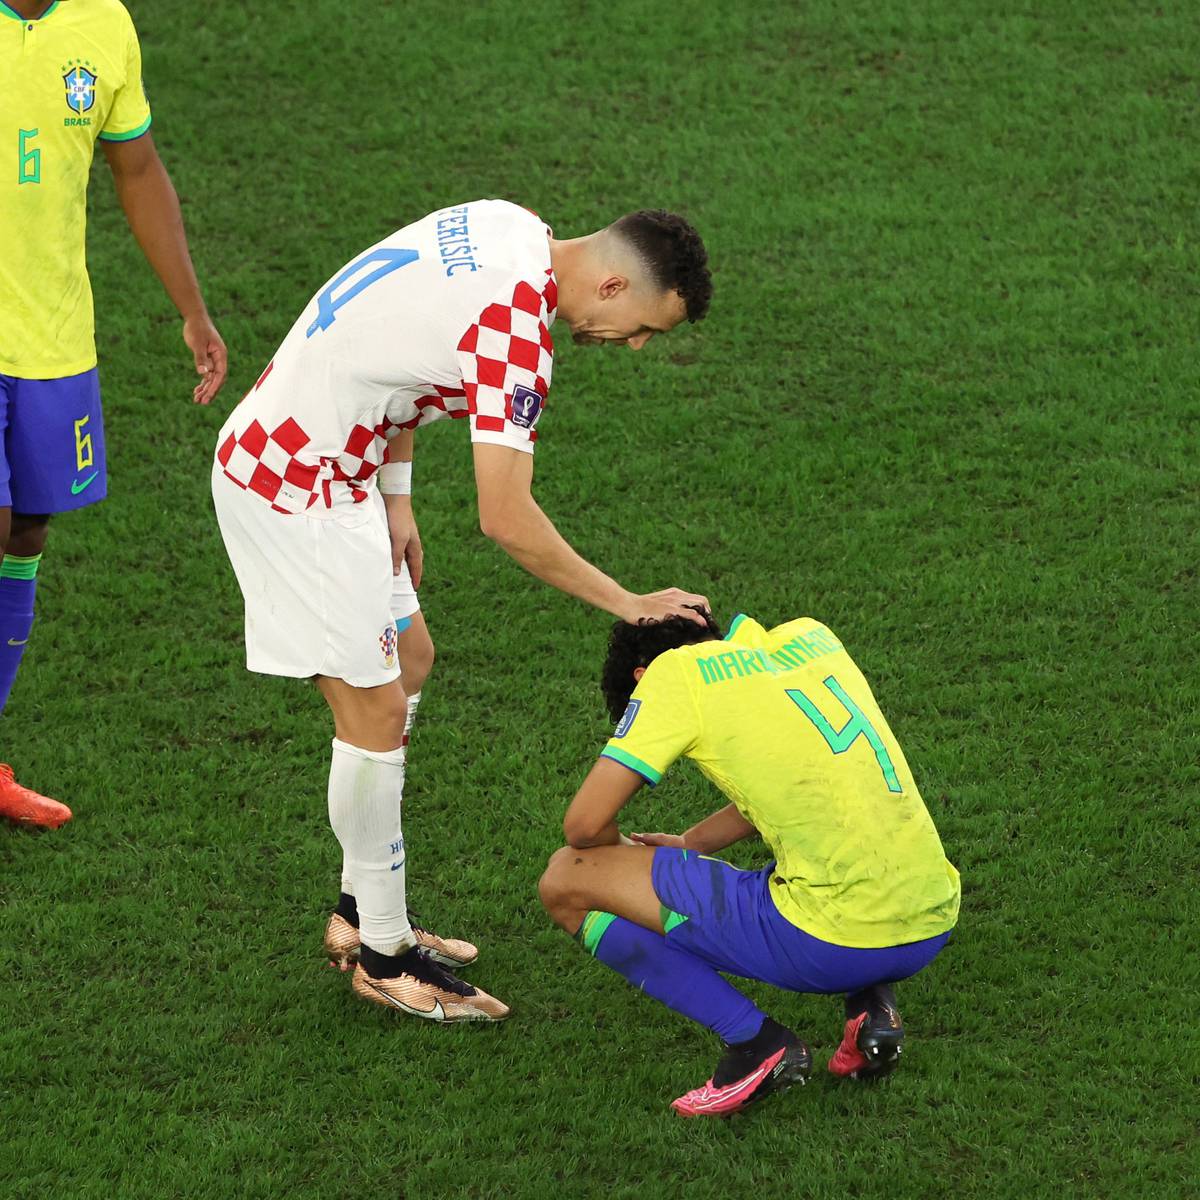 As disputas por pênaltis do Brasil na história da Copa do Mundo